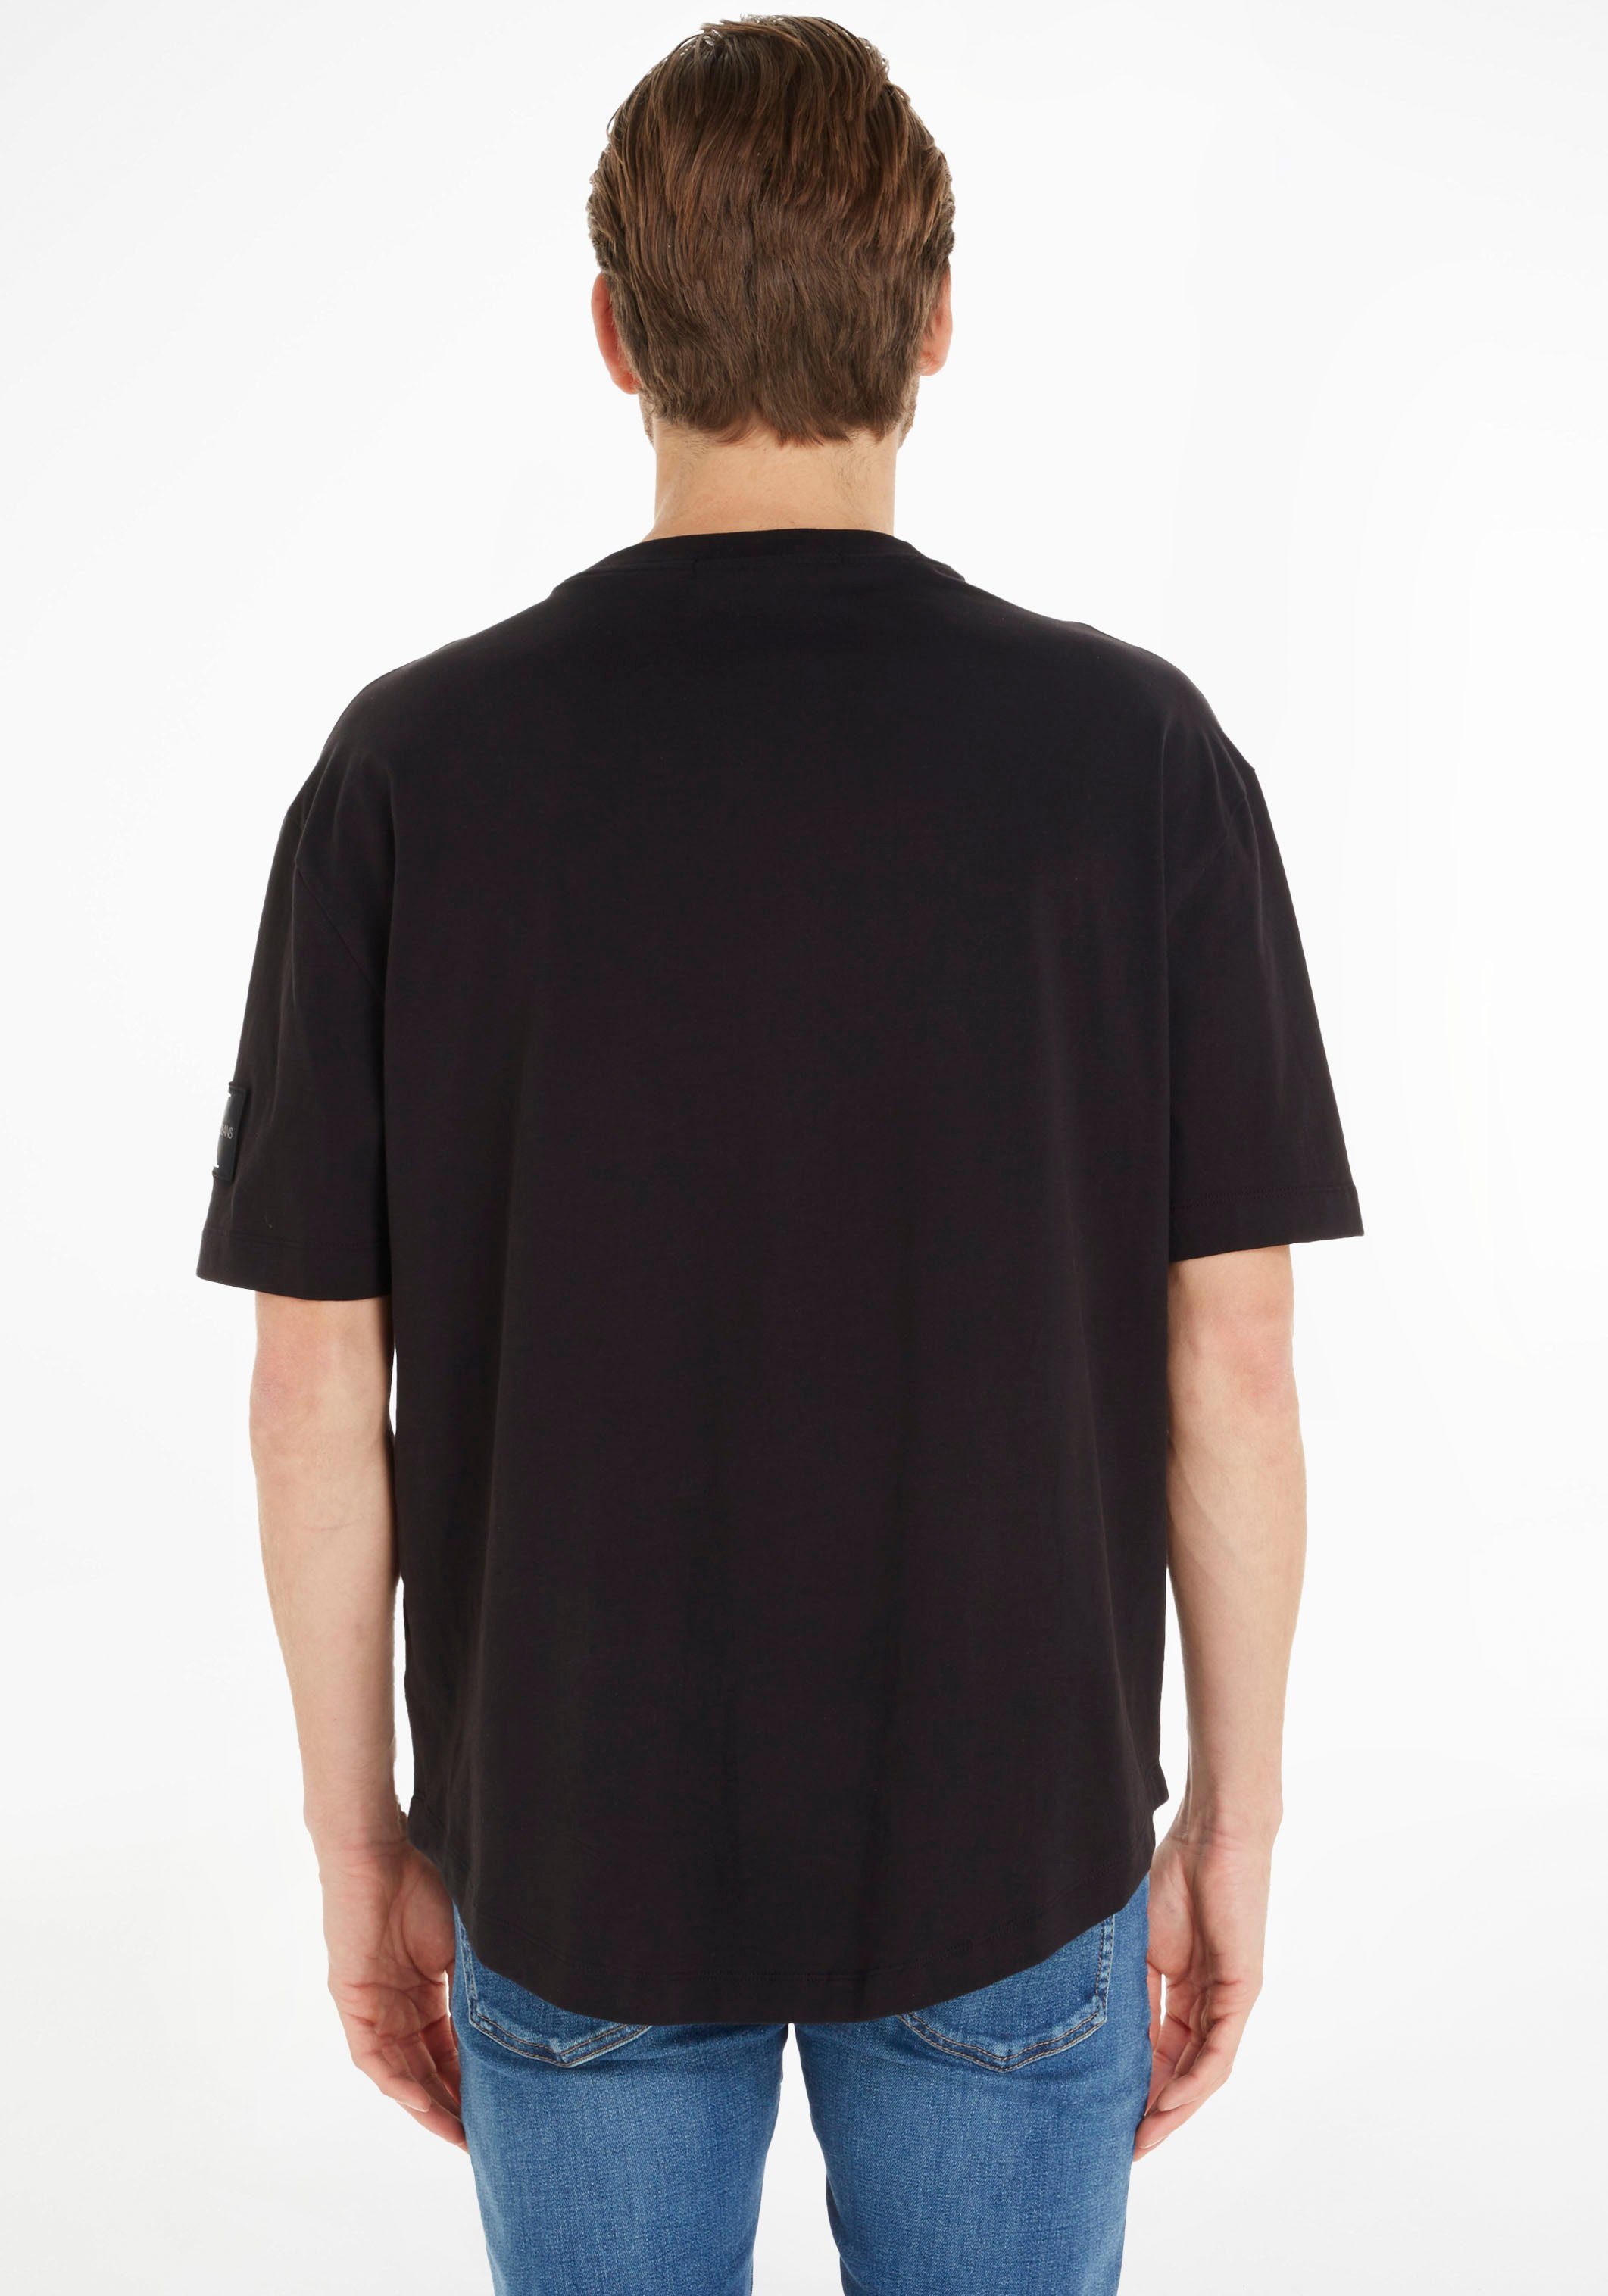 Ärmel Calvin Black T-Shirt Jeans BADGE OVERSIZED TEE Logo-Badge Klein MONOLOGO dem Ck Klein auf Calvin mit